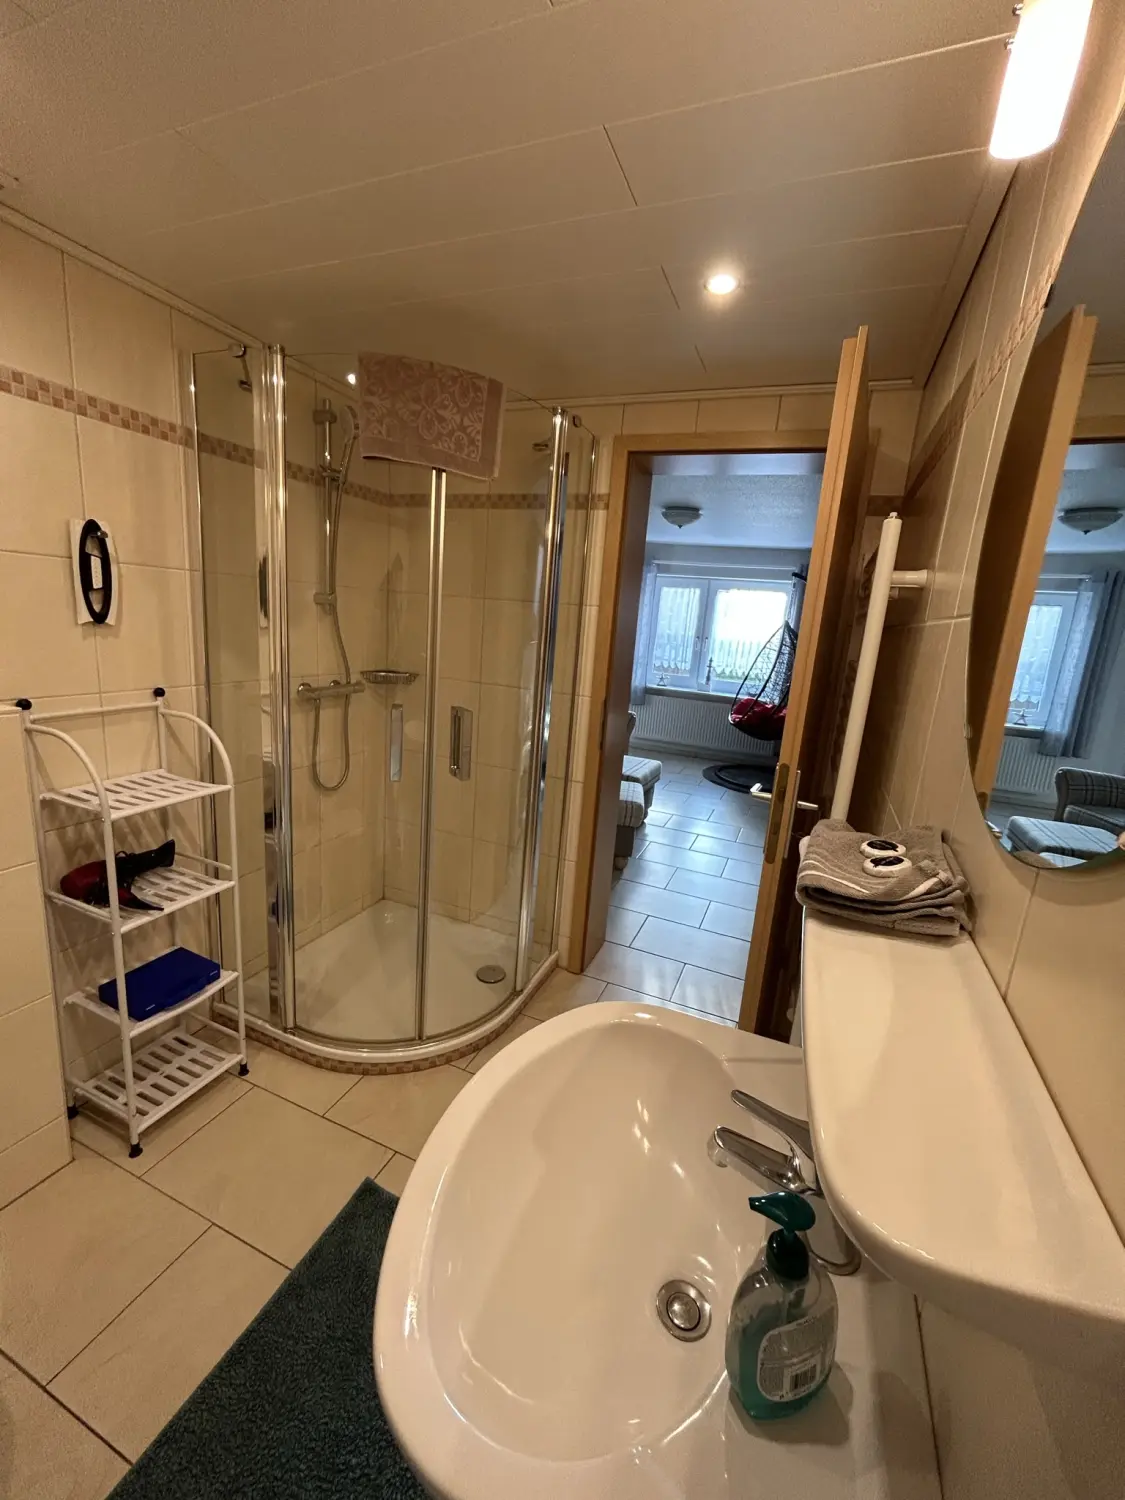 FEWO-"HÜS HELGOLAND" Badezimmer im Gästehaus Bi de Ley auf Norderhörn